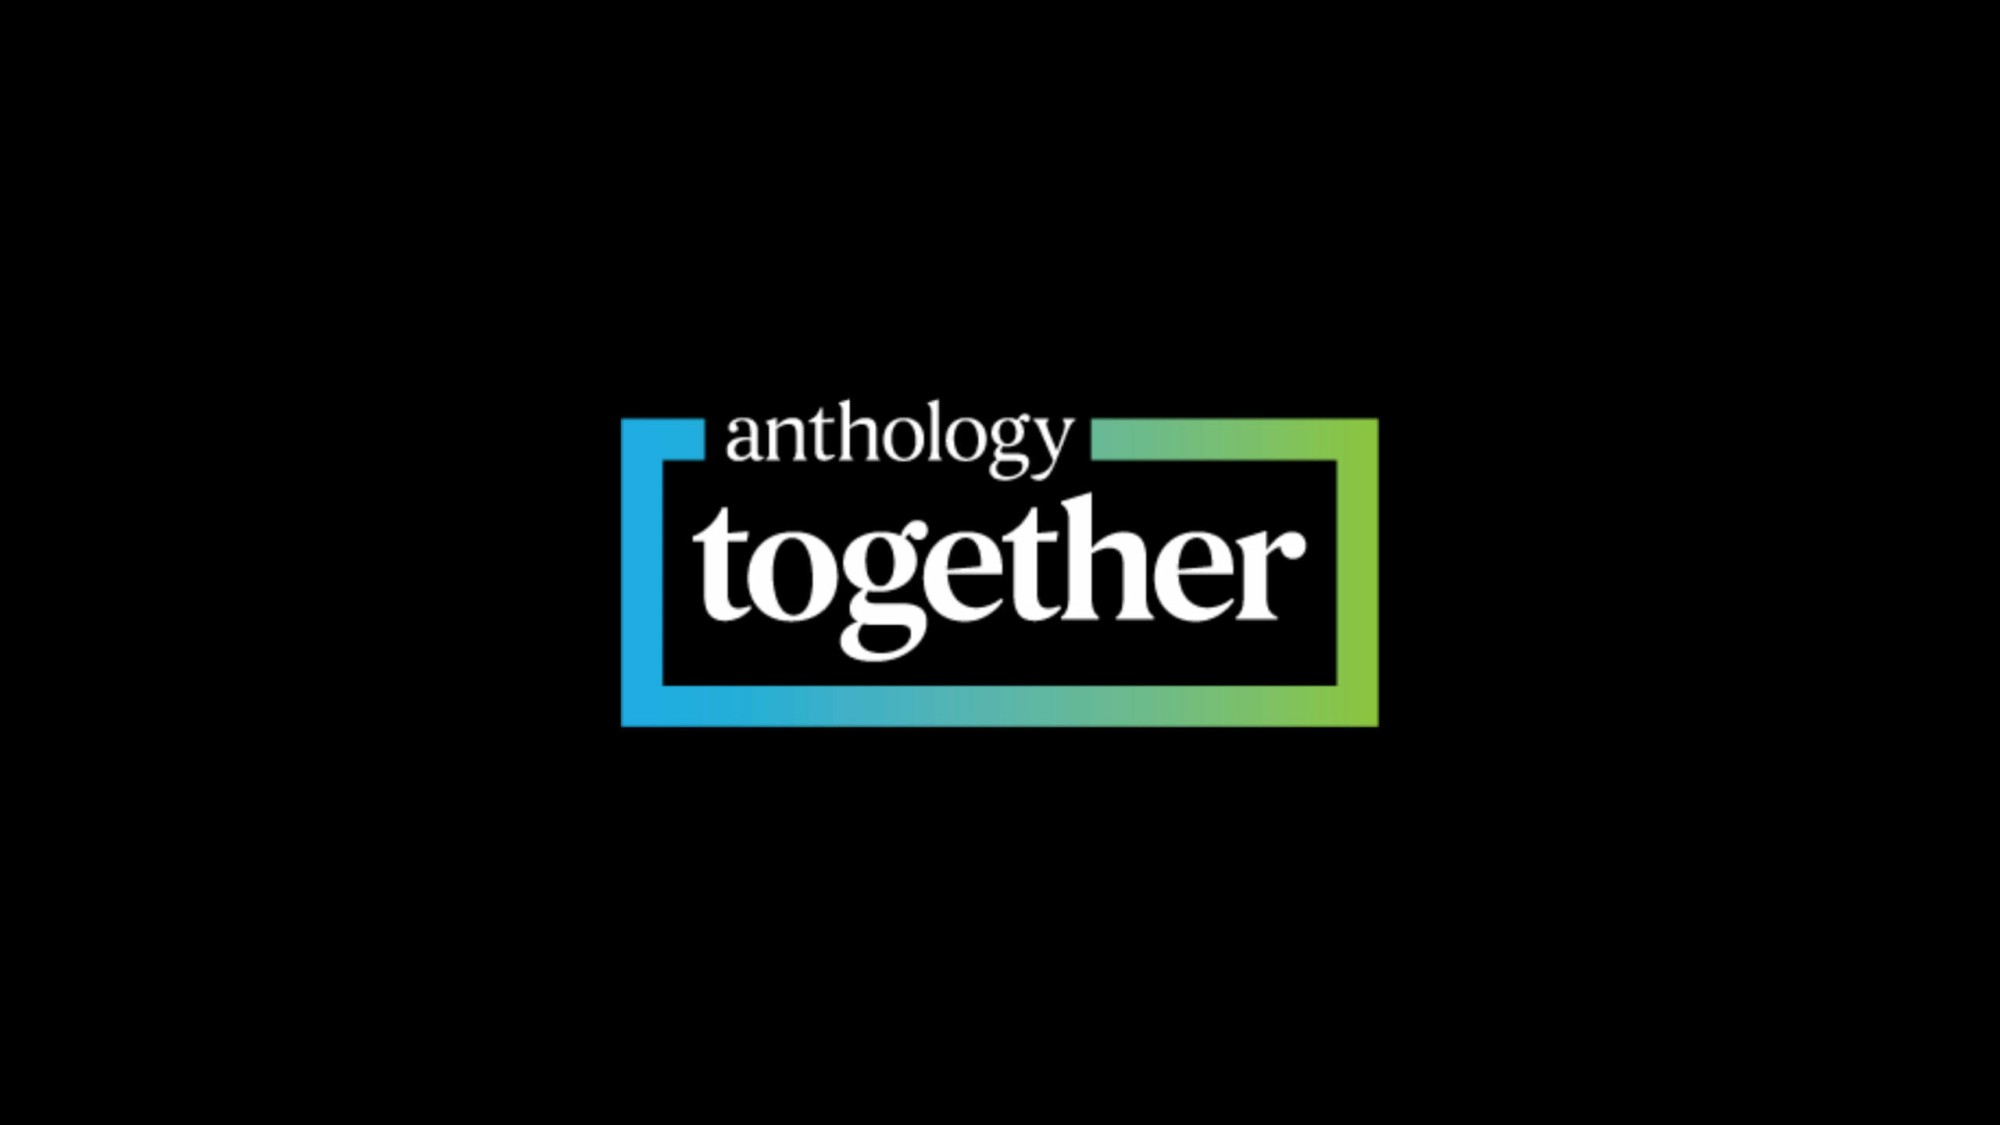 Anthology Together logo on a black background